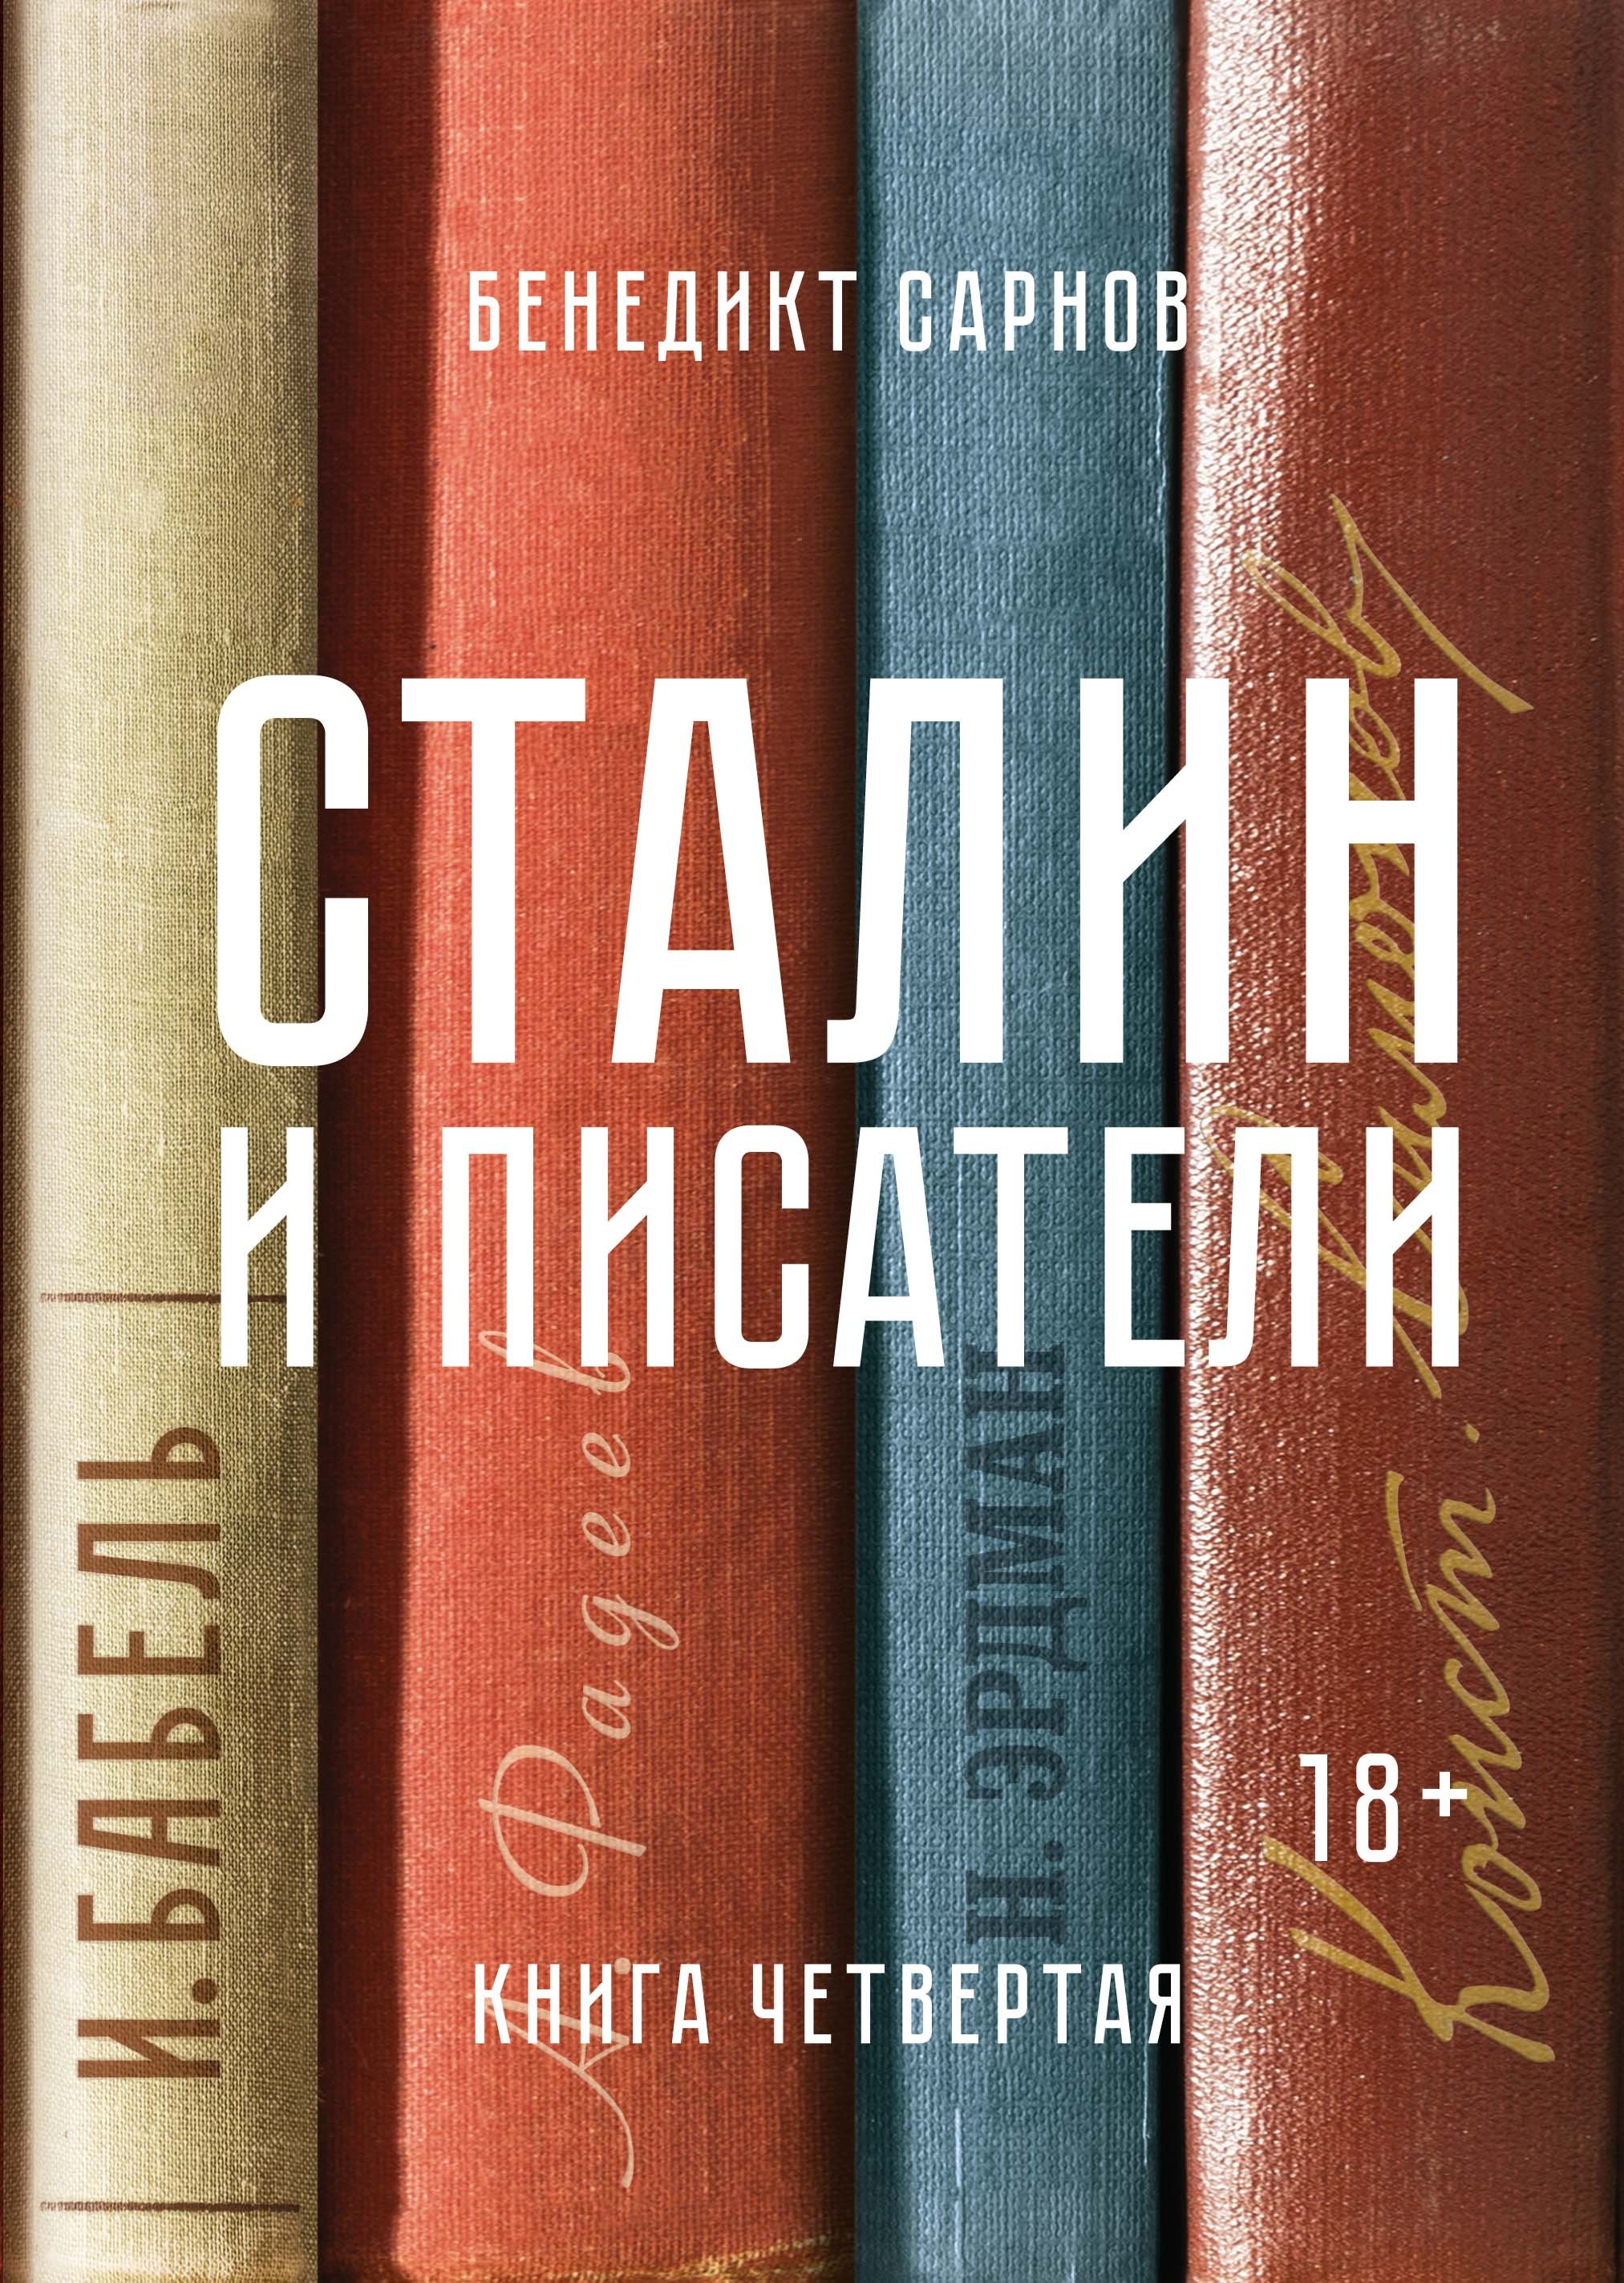 Сарнов Бенедикт Михайлович - Сталин и писатели. Книга четвертая